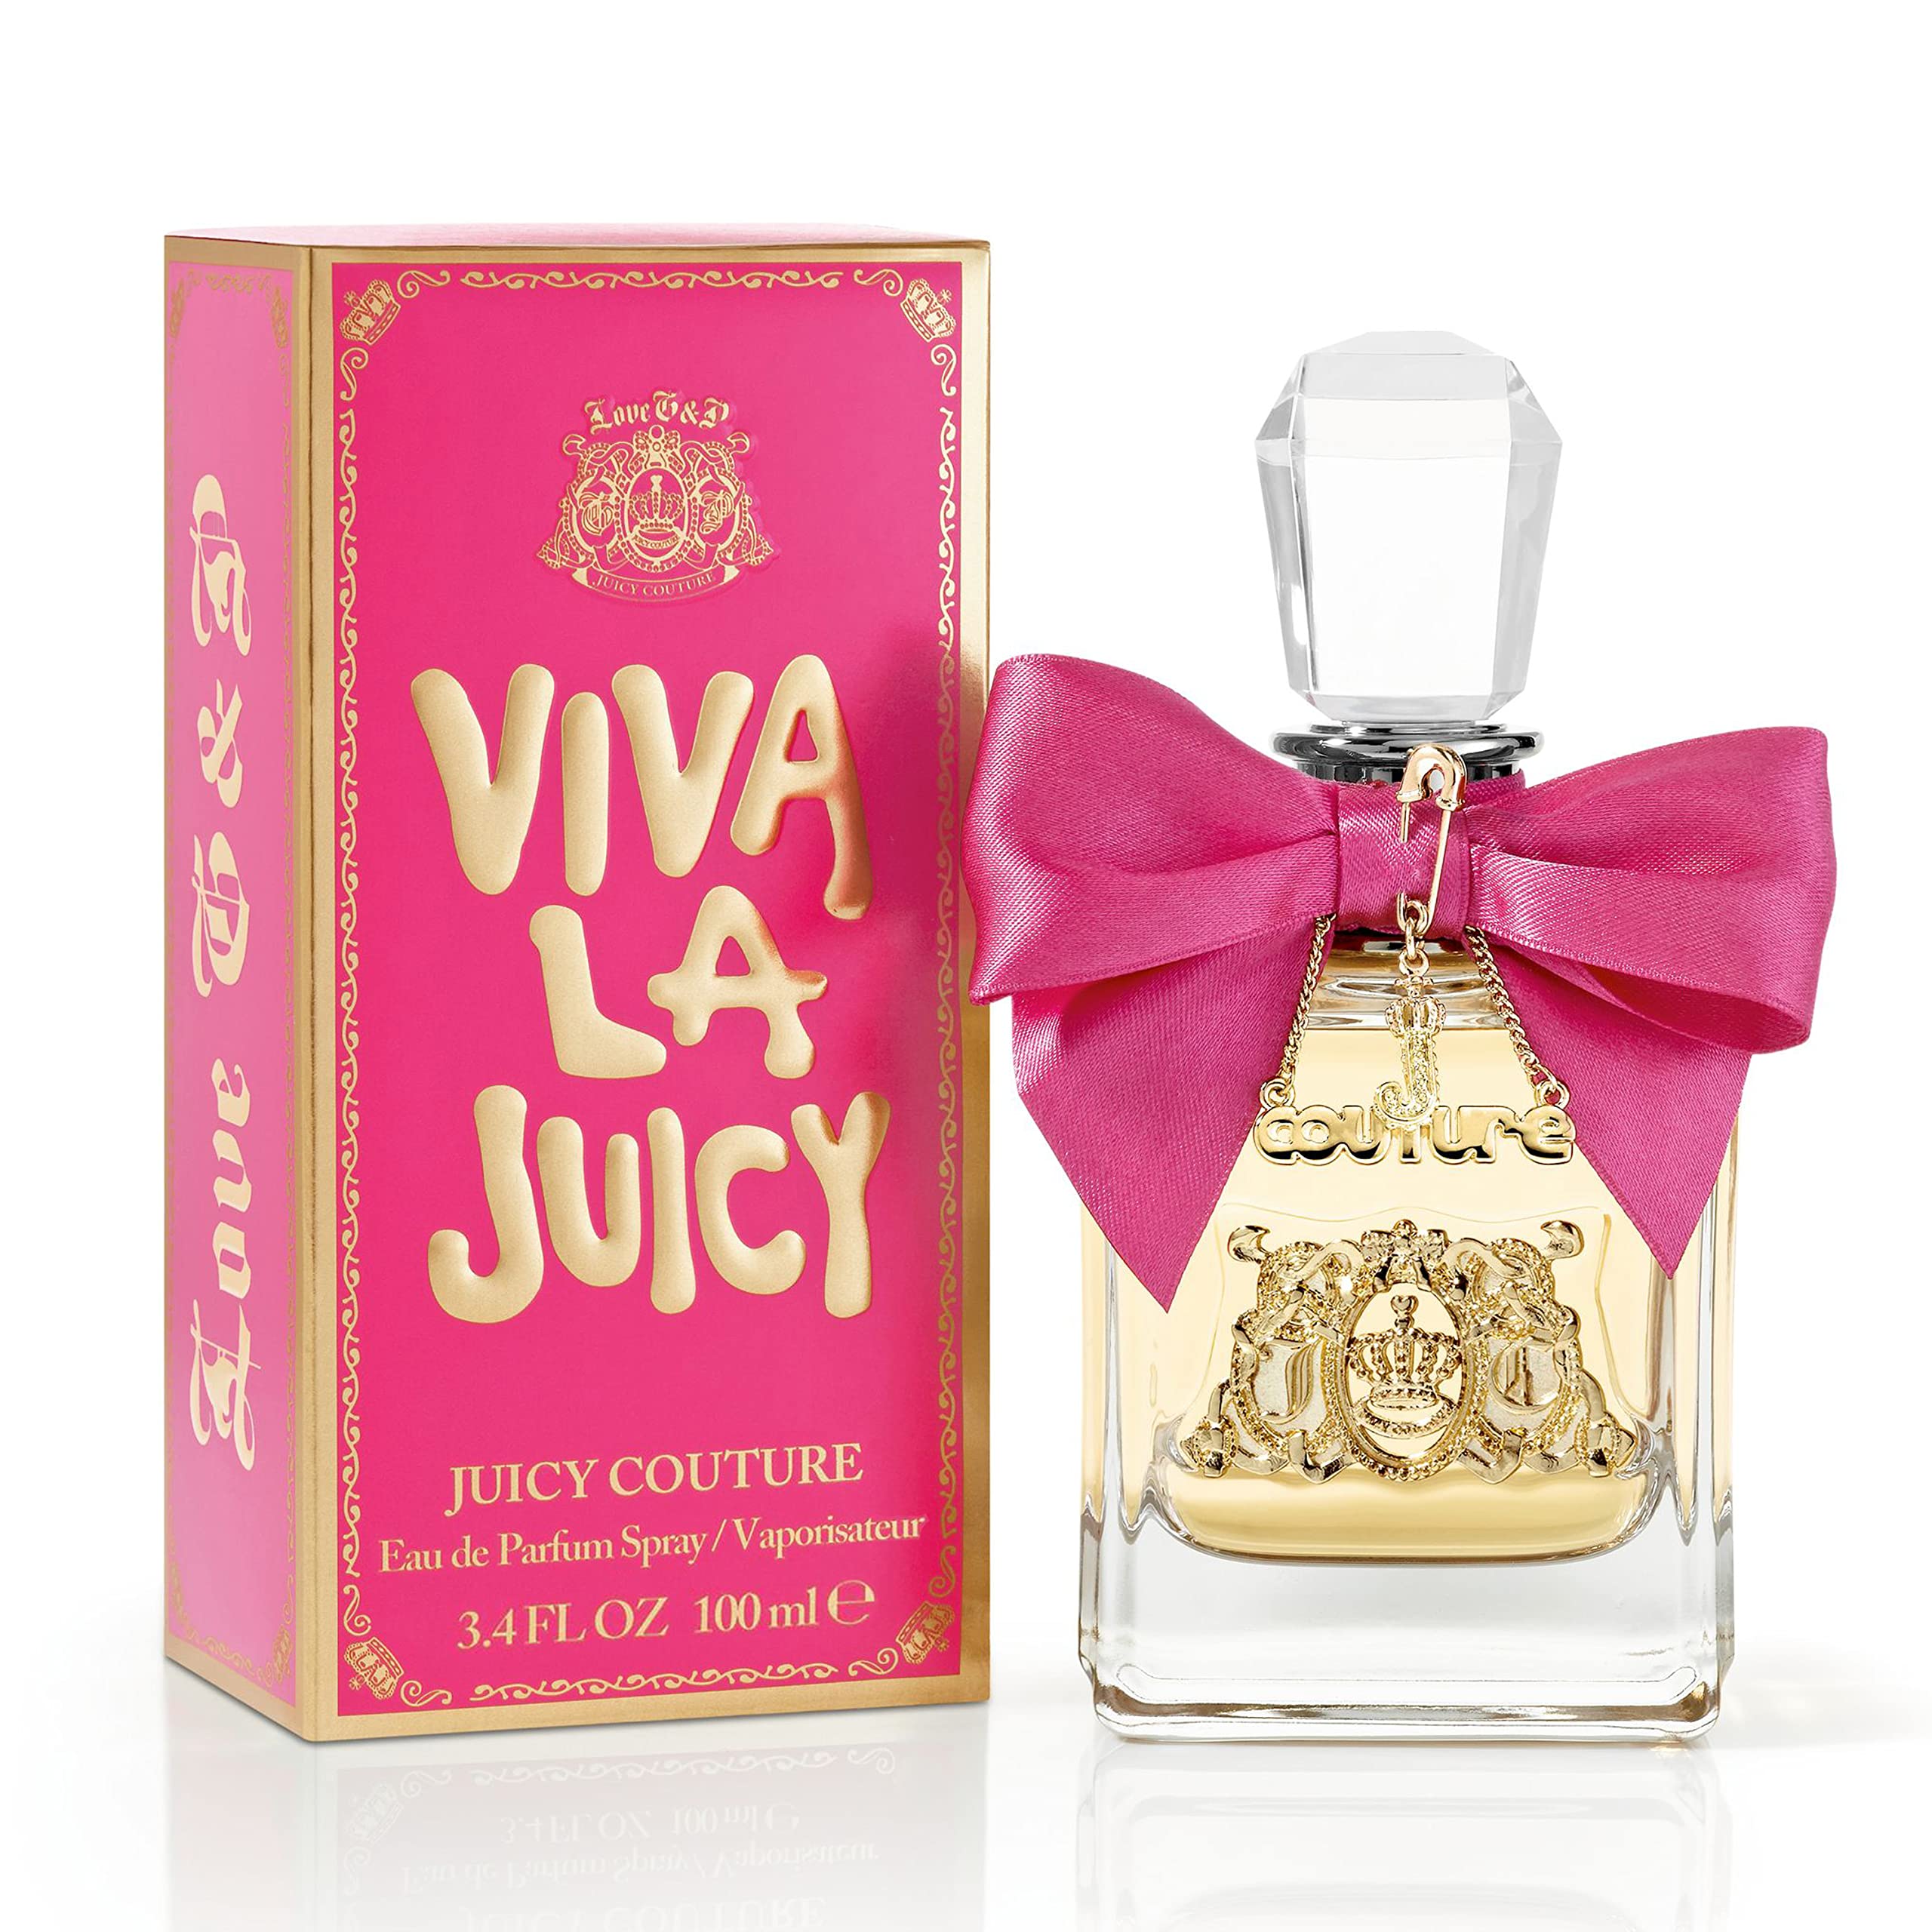 Juicy Couture Viva La Juicy Womens Perfume, Eau de Parfum Spray 3.4 Fl Oz.